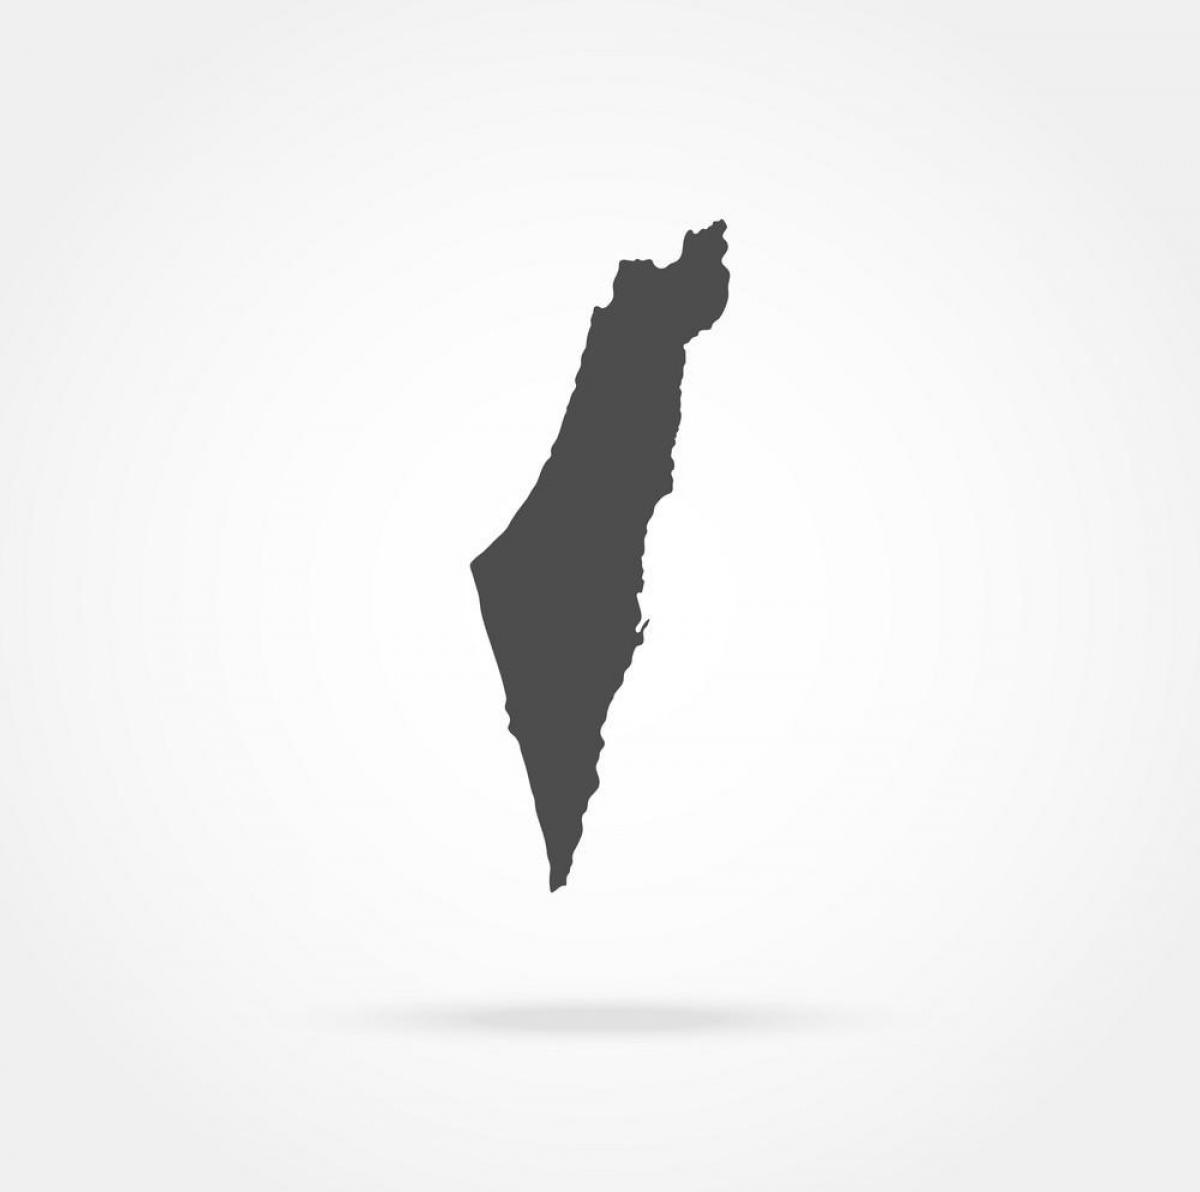 Israel vektor karte